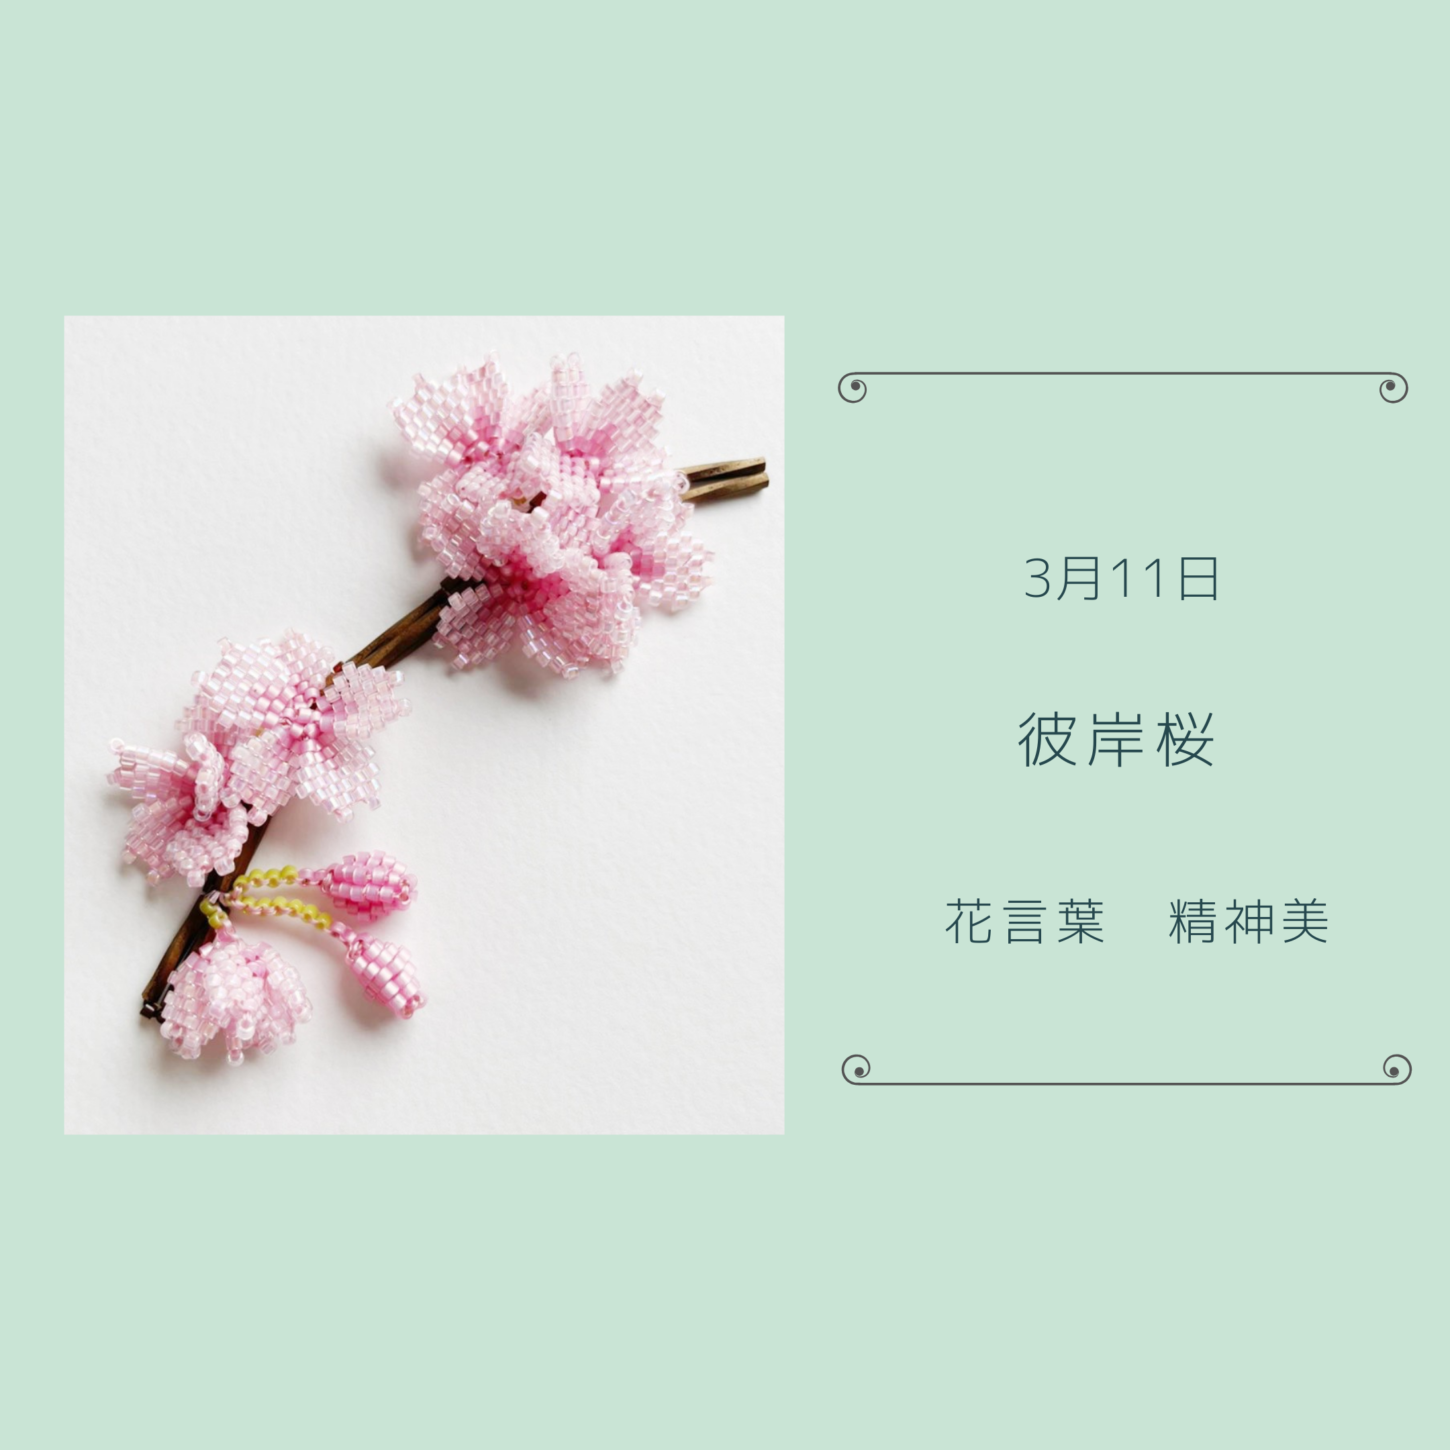 ビーズで綴る花言葉365 ビーズで綴る花言葉by東京都ビーズ教室あとりえ和みビーズ研究室